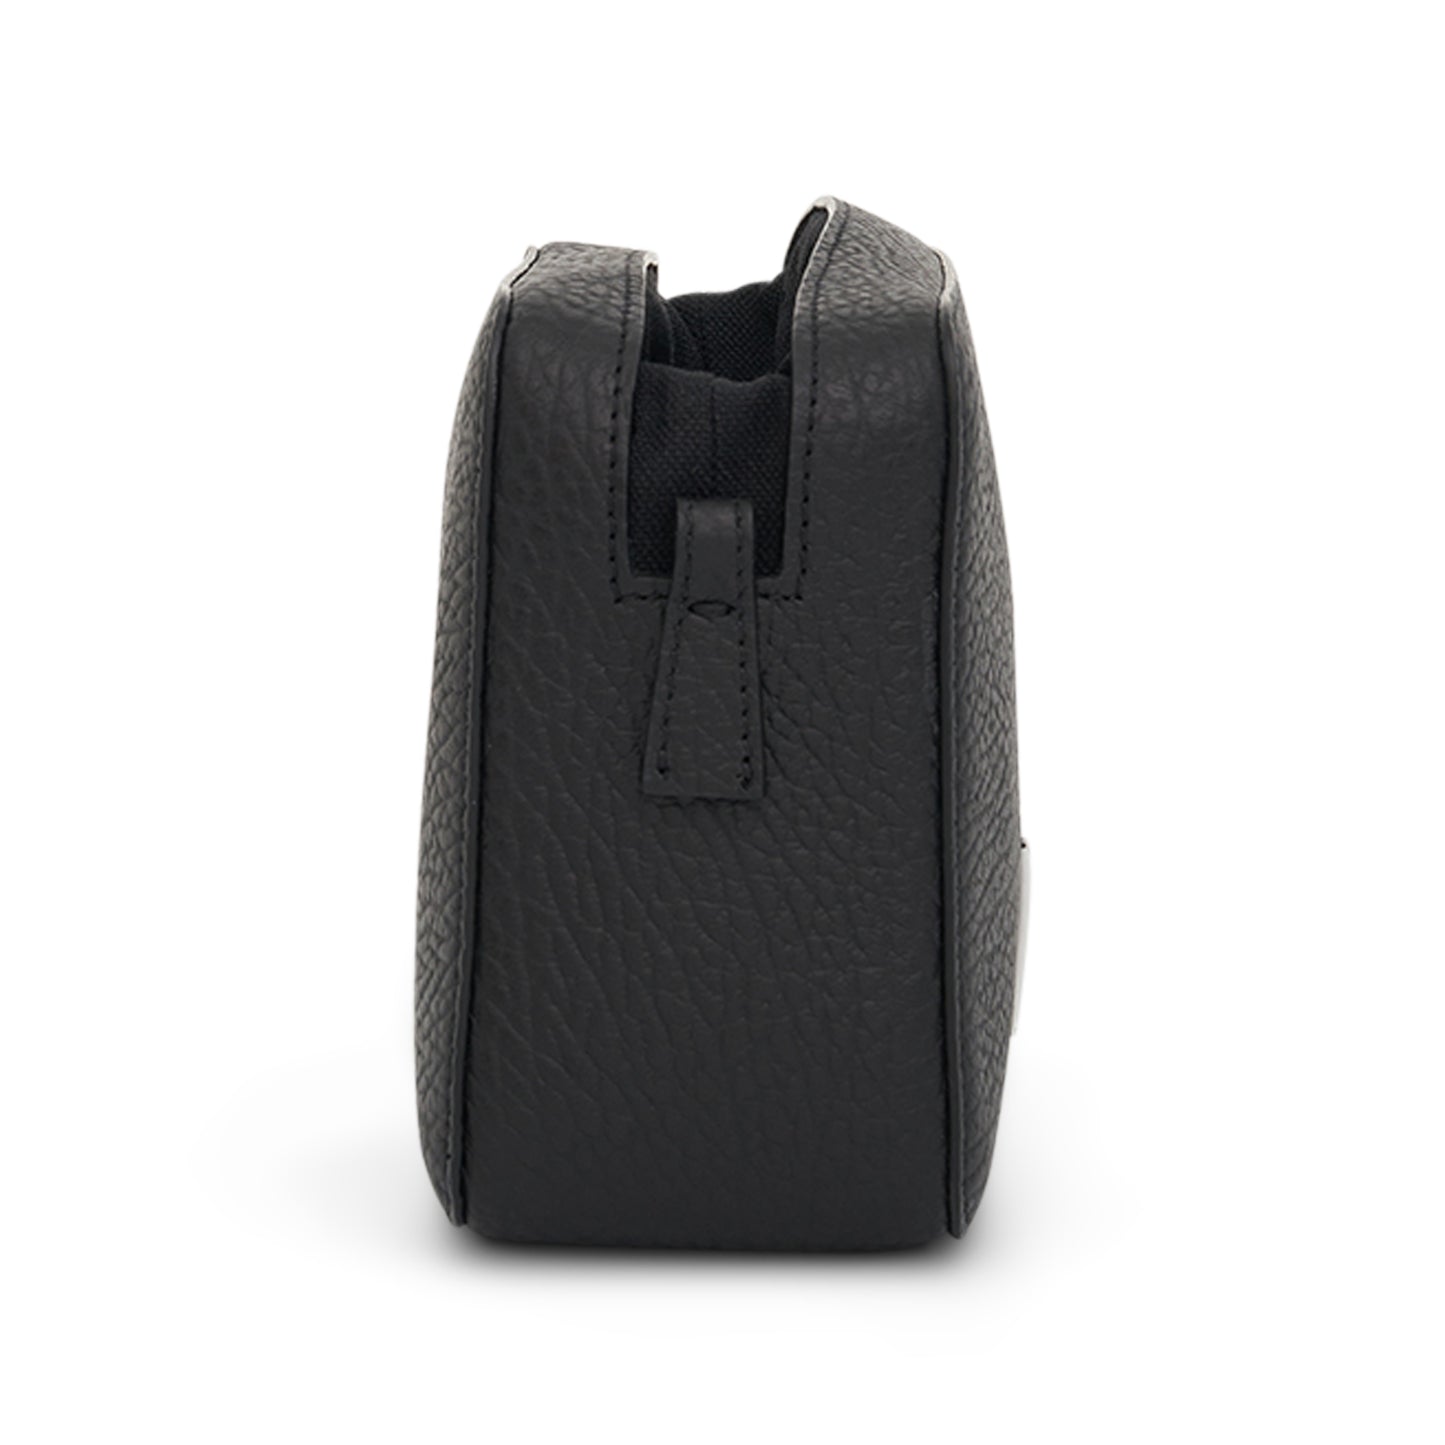 Medium 5AC Camera Bag in Black